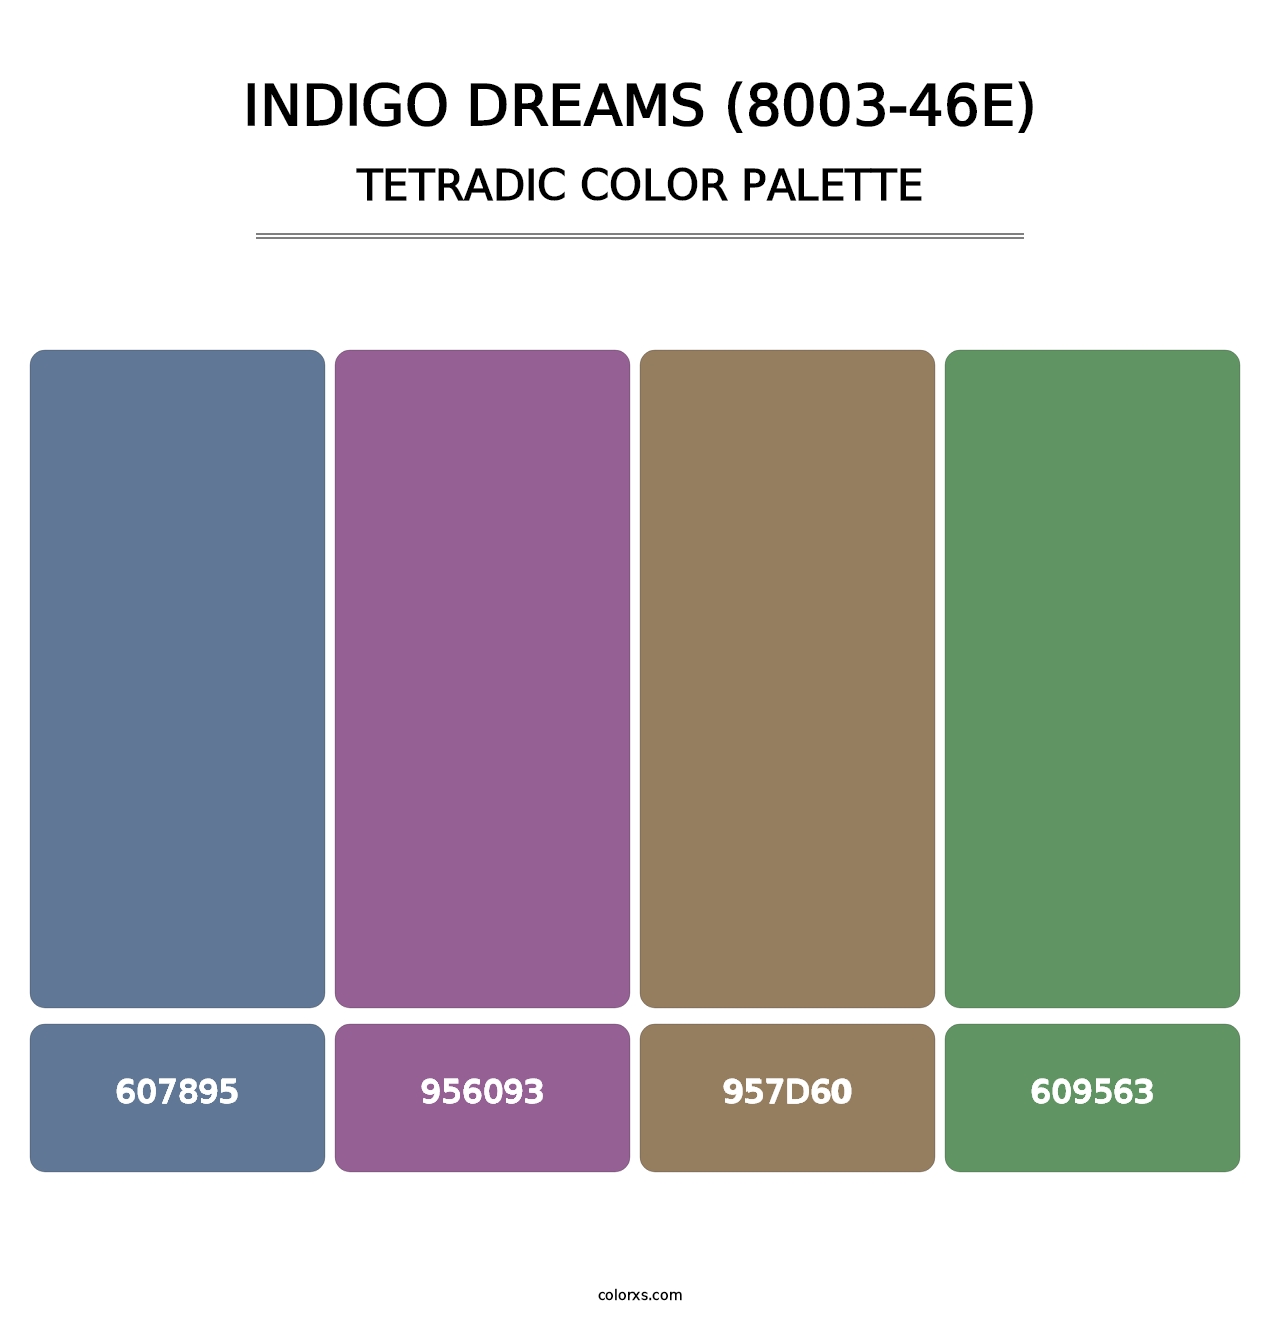 Indigo Dreams (8003-46E) - Tetradic Color Palette